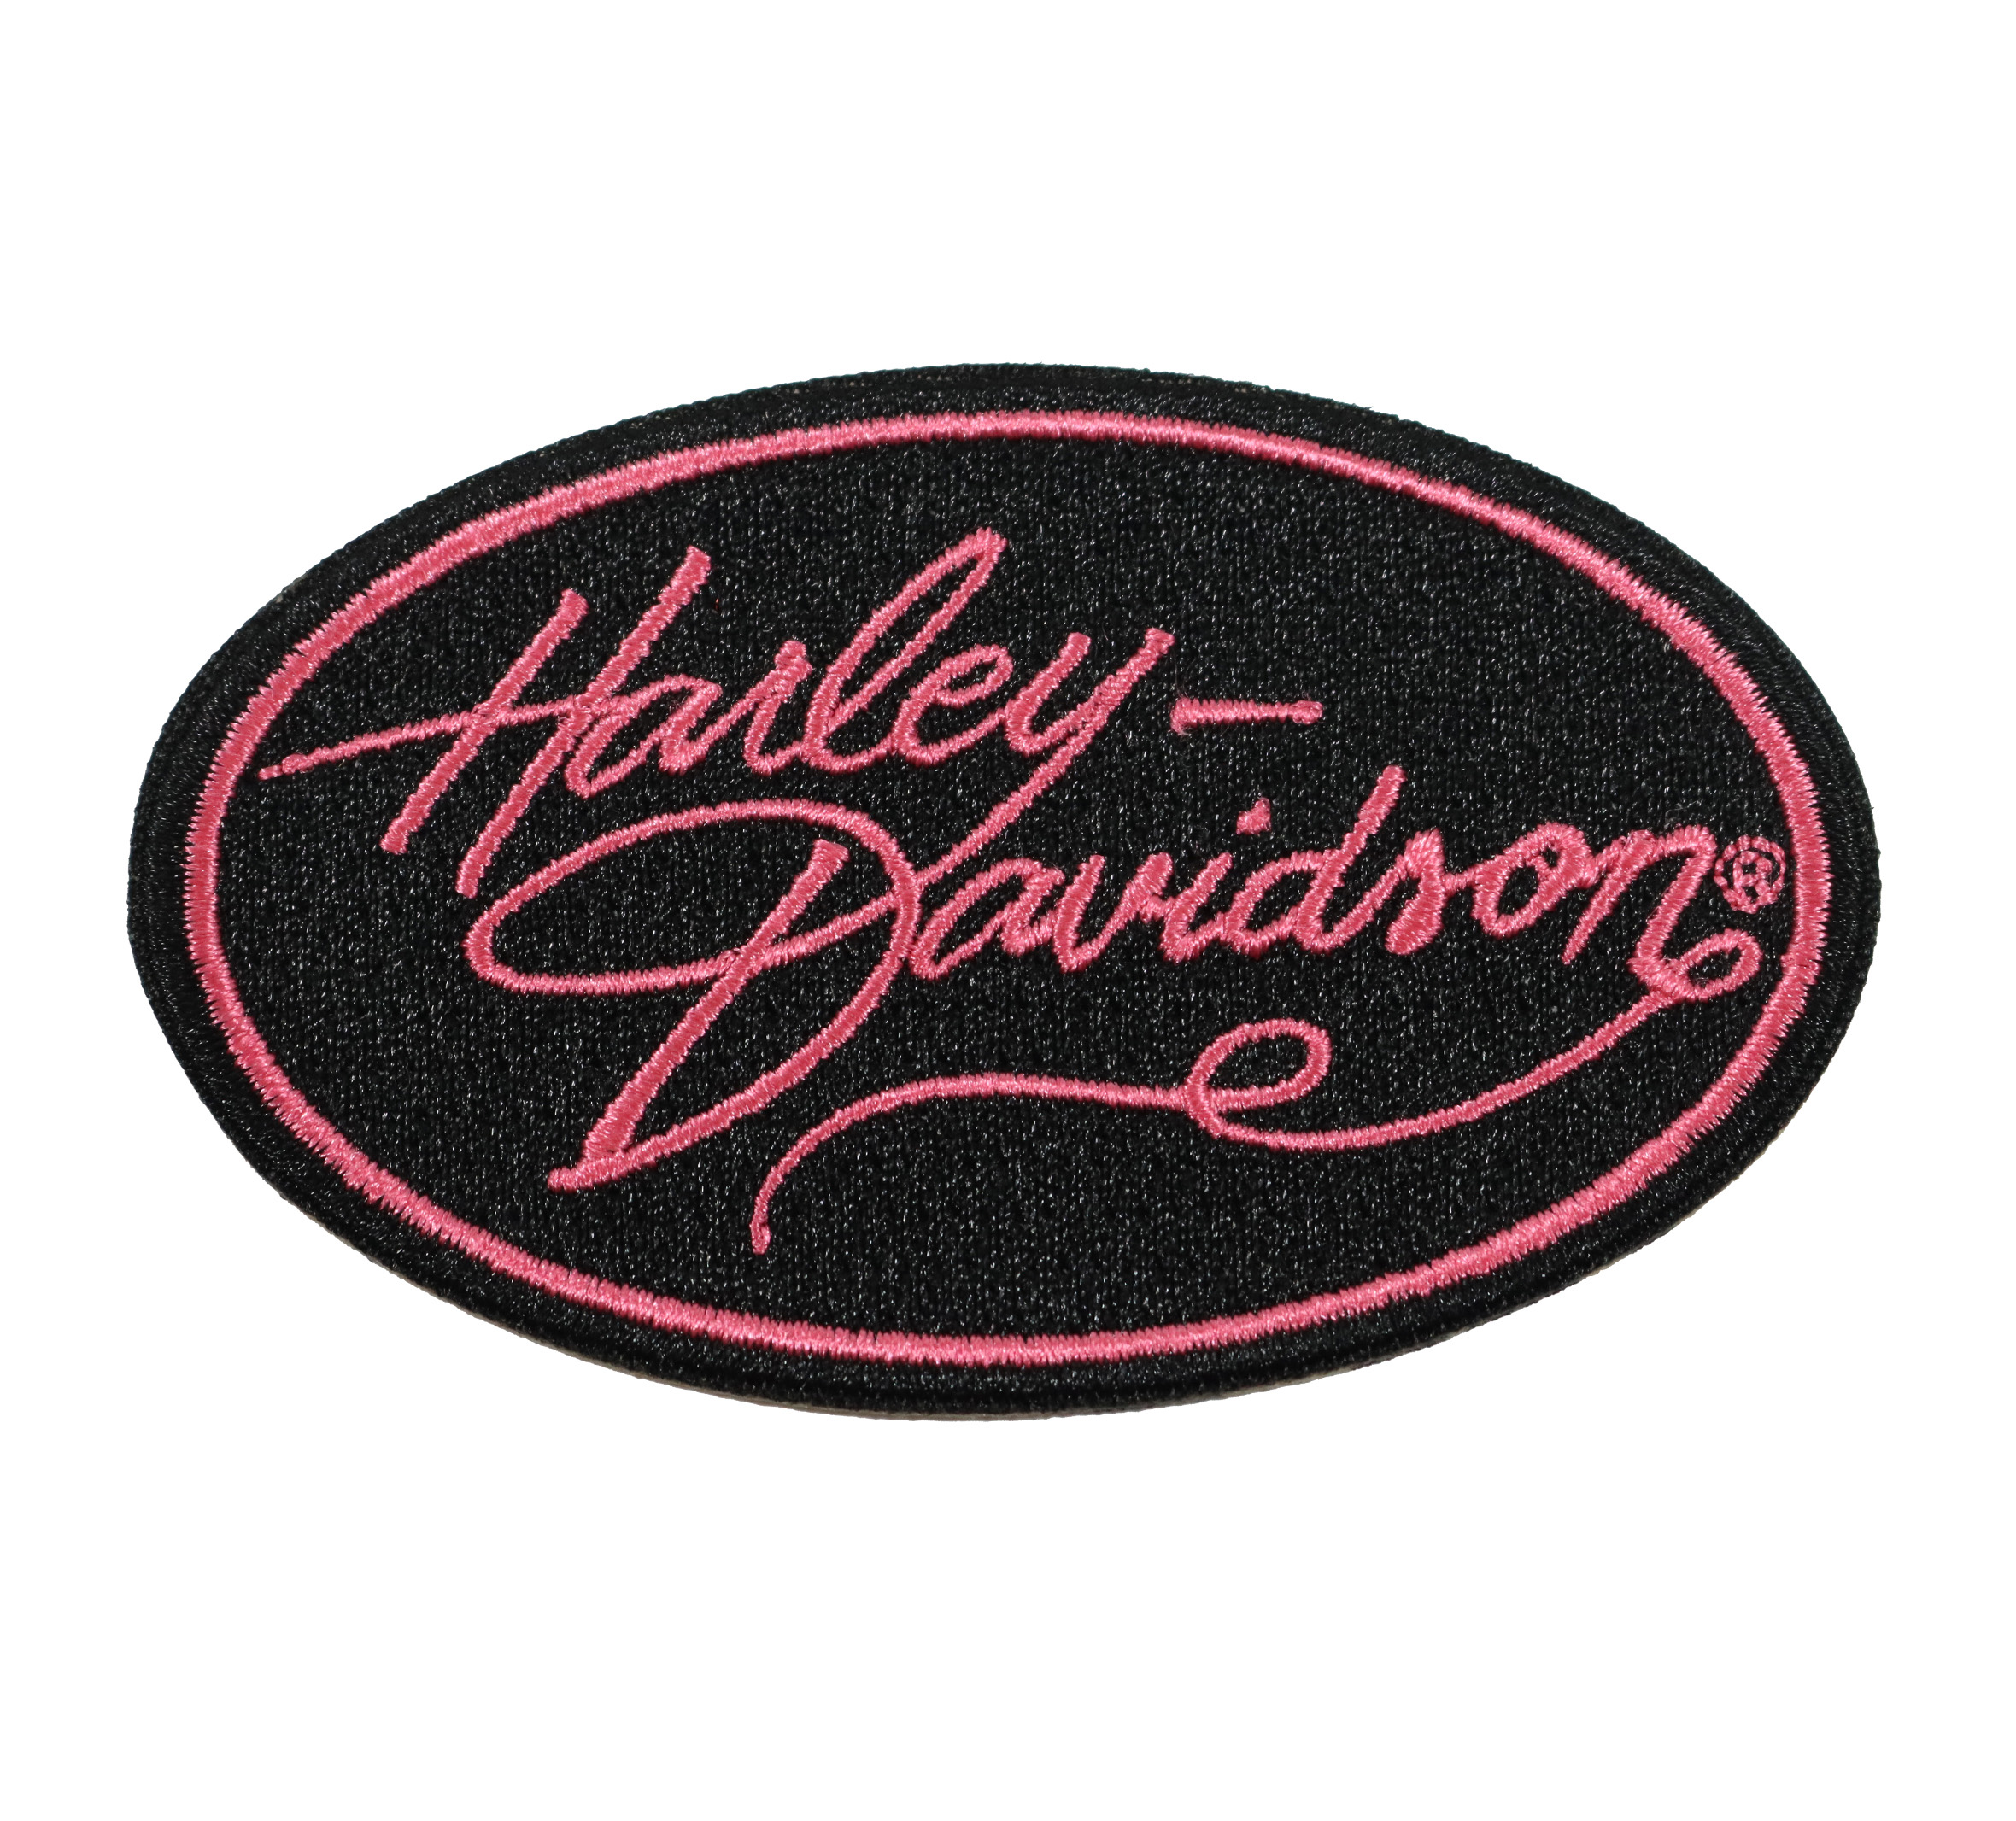 Harley-Davidson Embroidered Harley Gal Oval Emblem 3.5 Sew-On Patch, Black